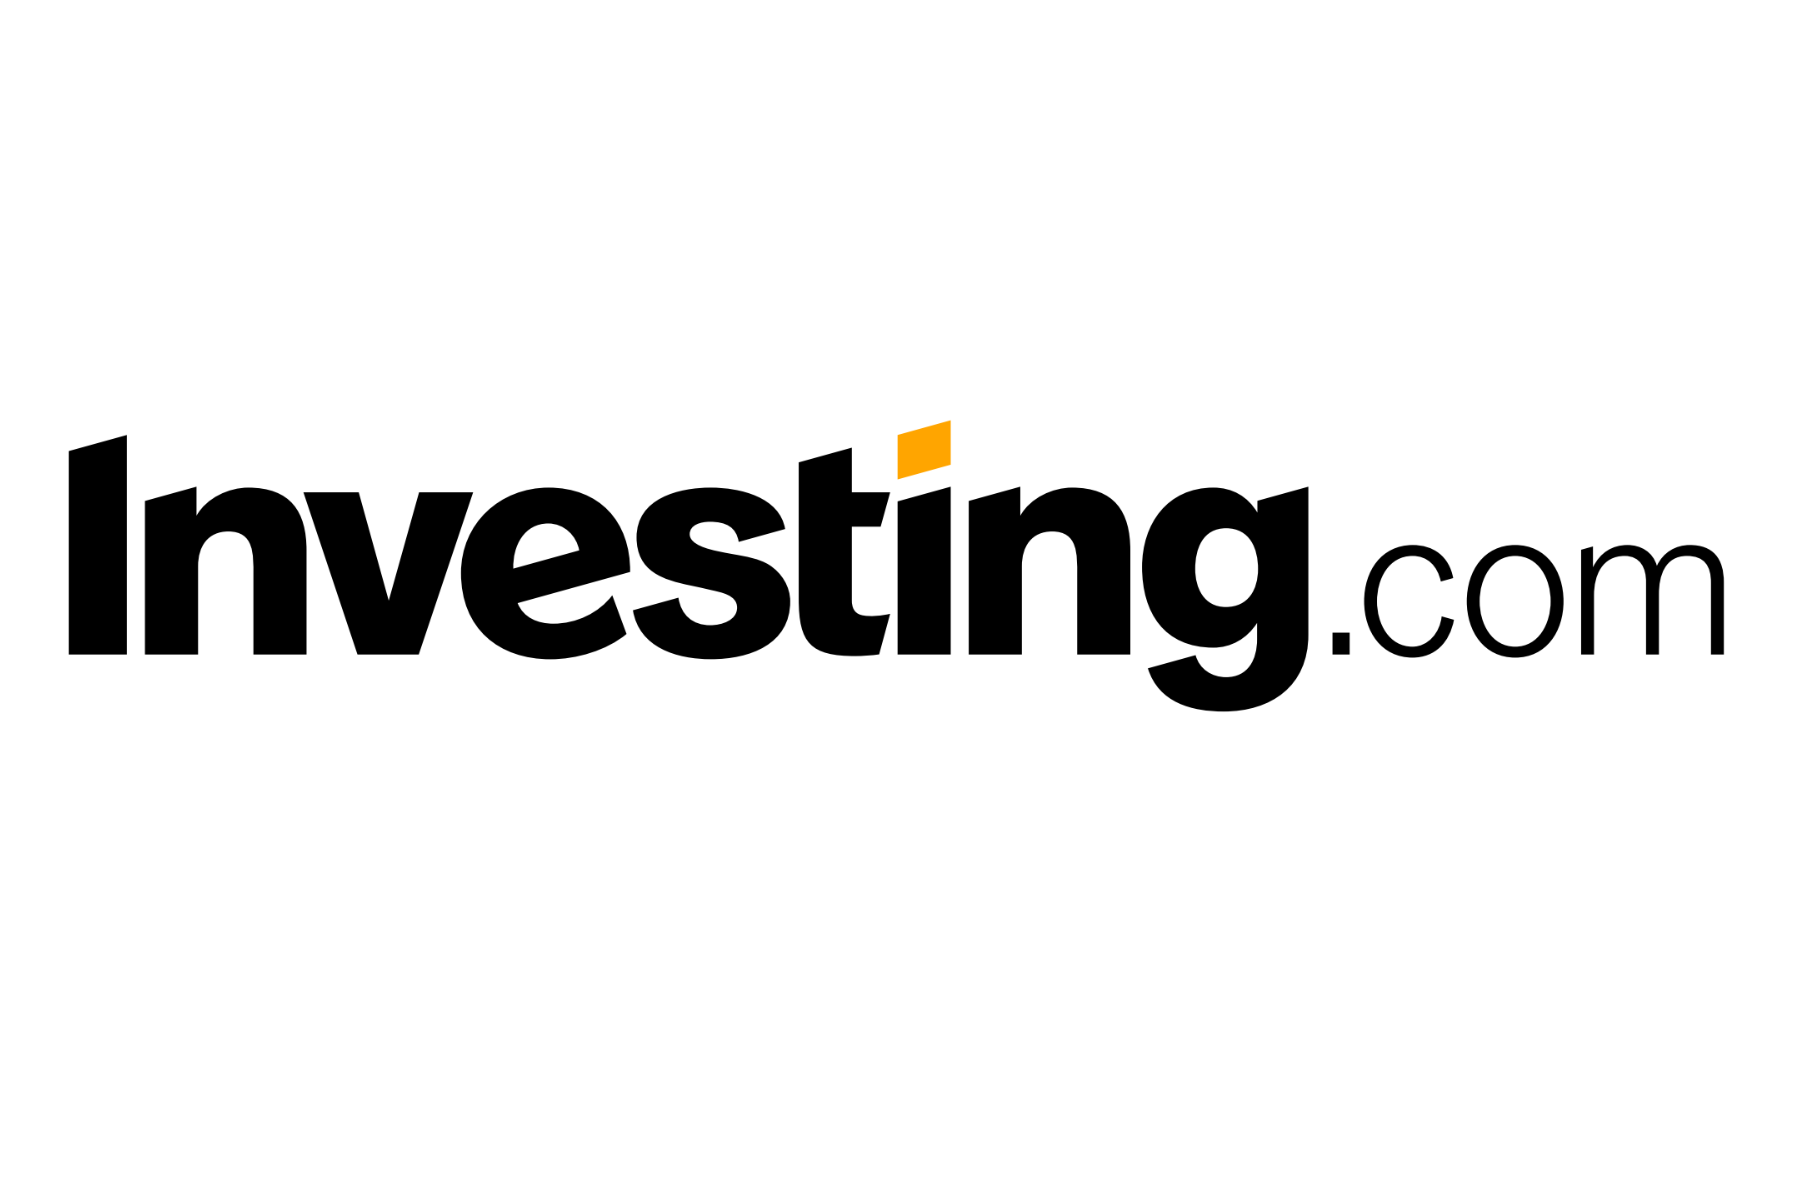 Playtcoin com. Investing.com. Investing лого. Investing.com logo. WINVESTOR логотип.